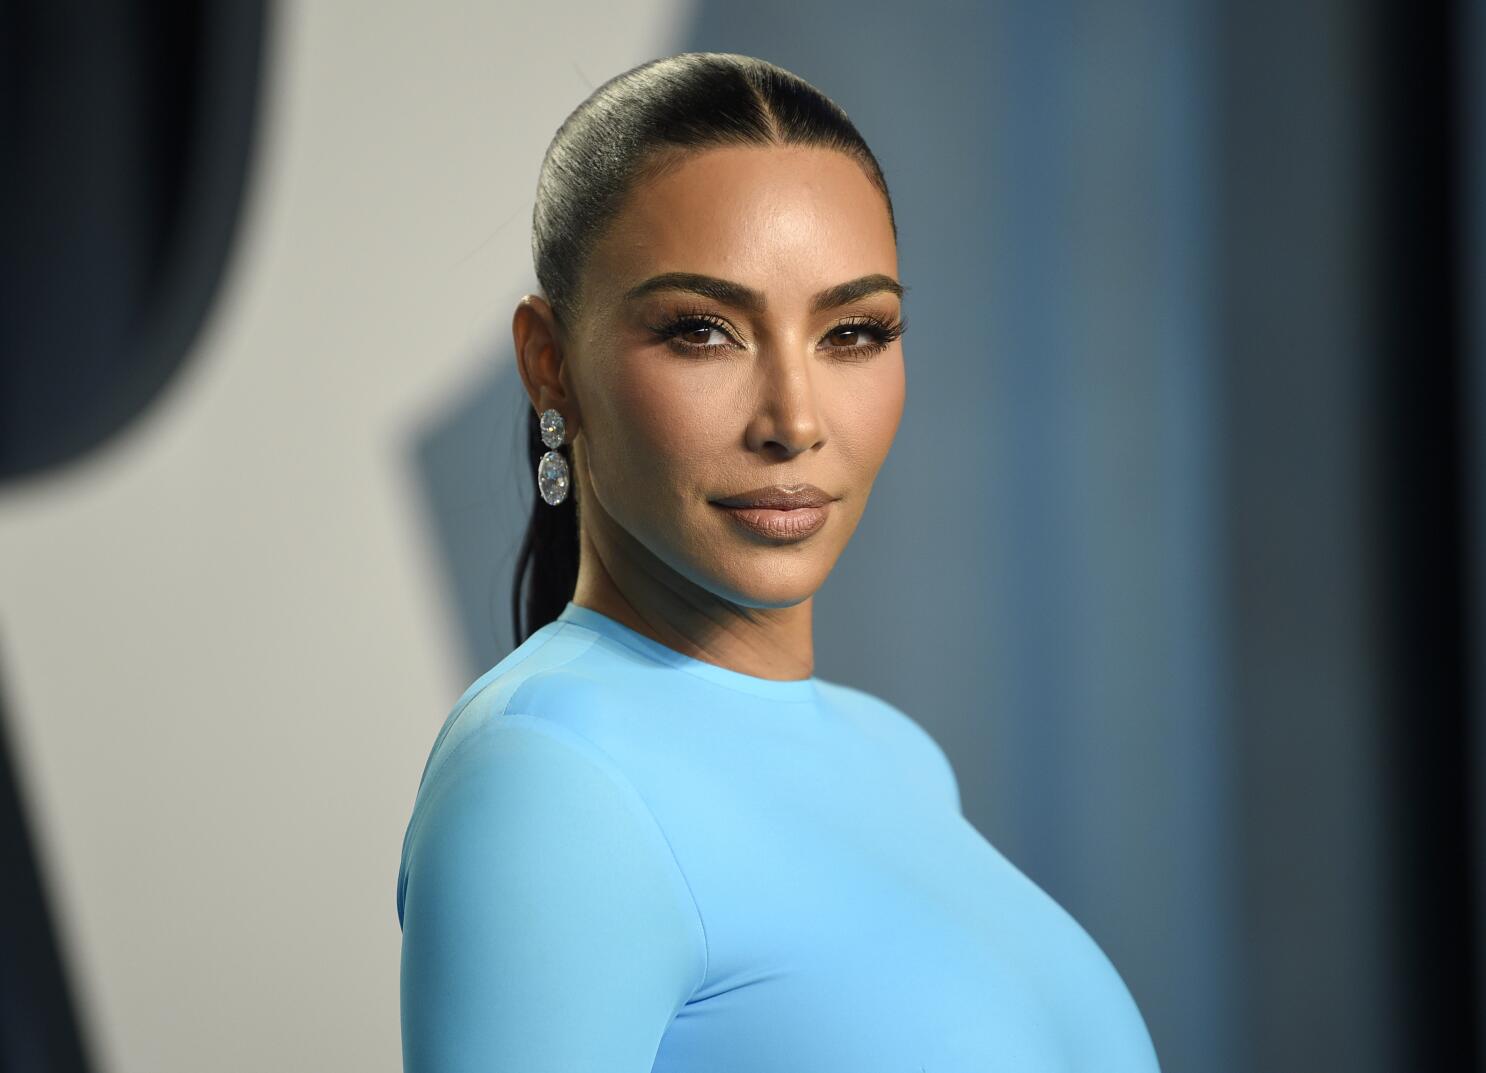 Kim Kardashian Instagram Story April 29, 2021 – Star Style